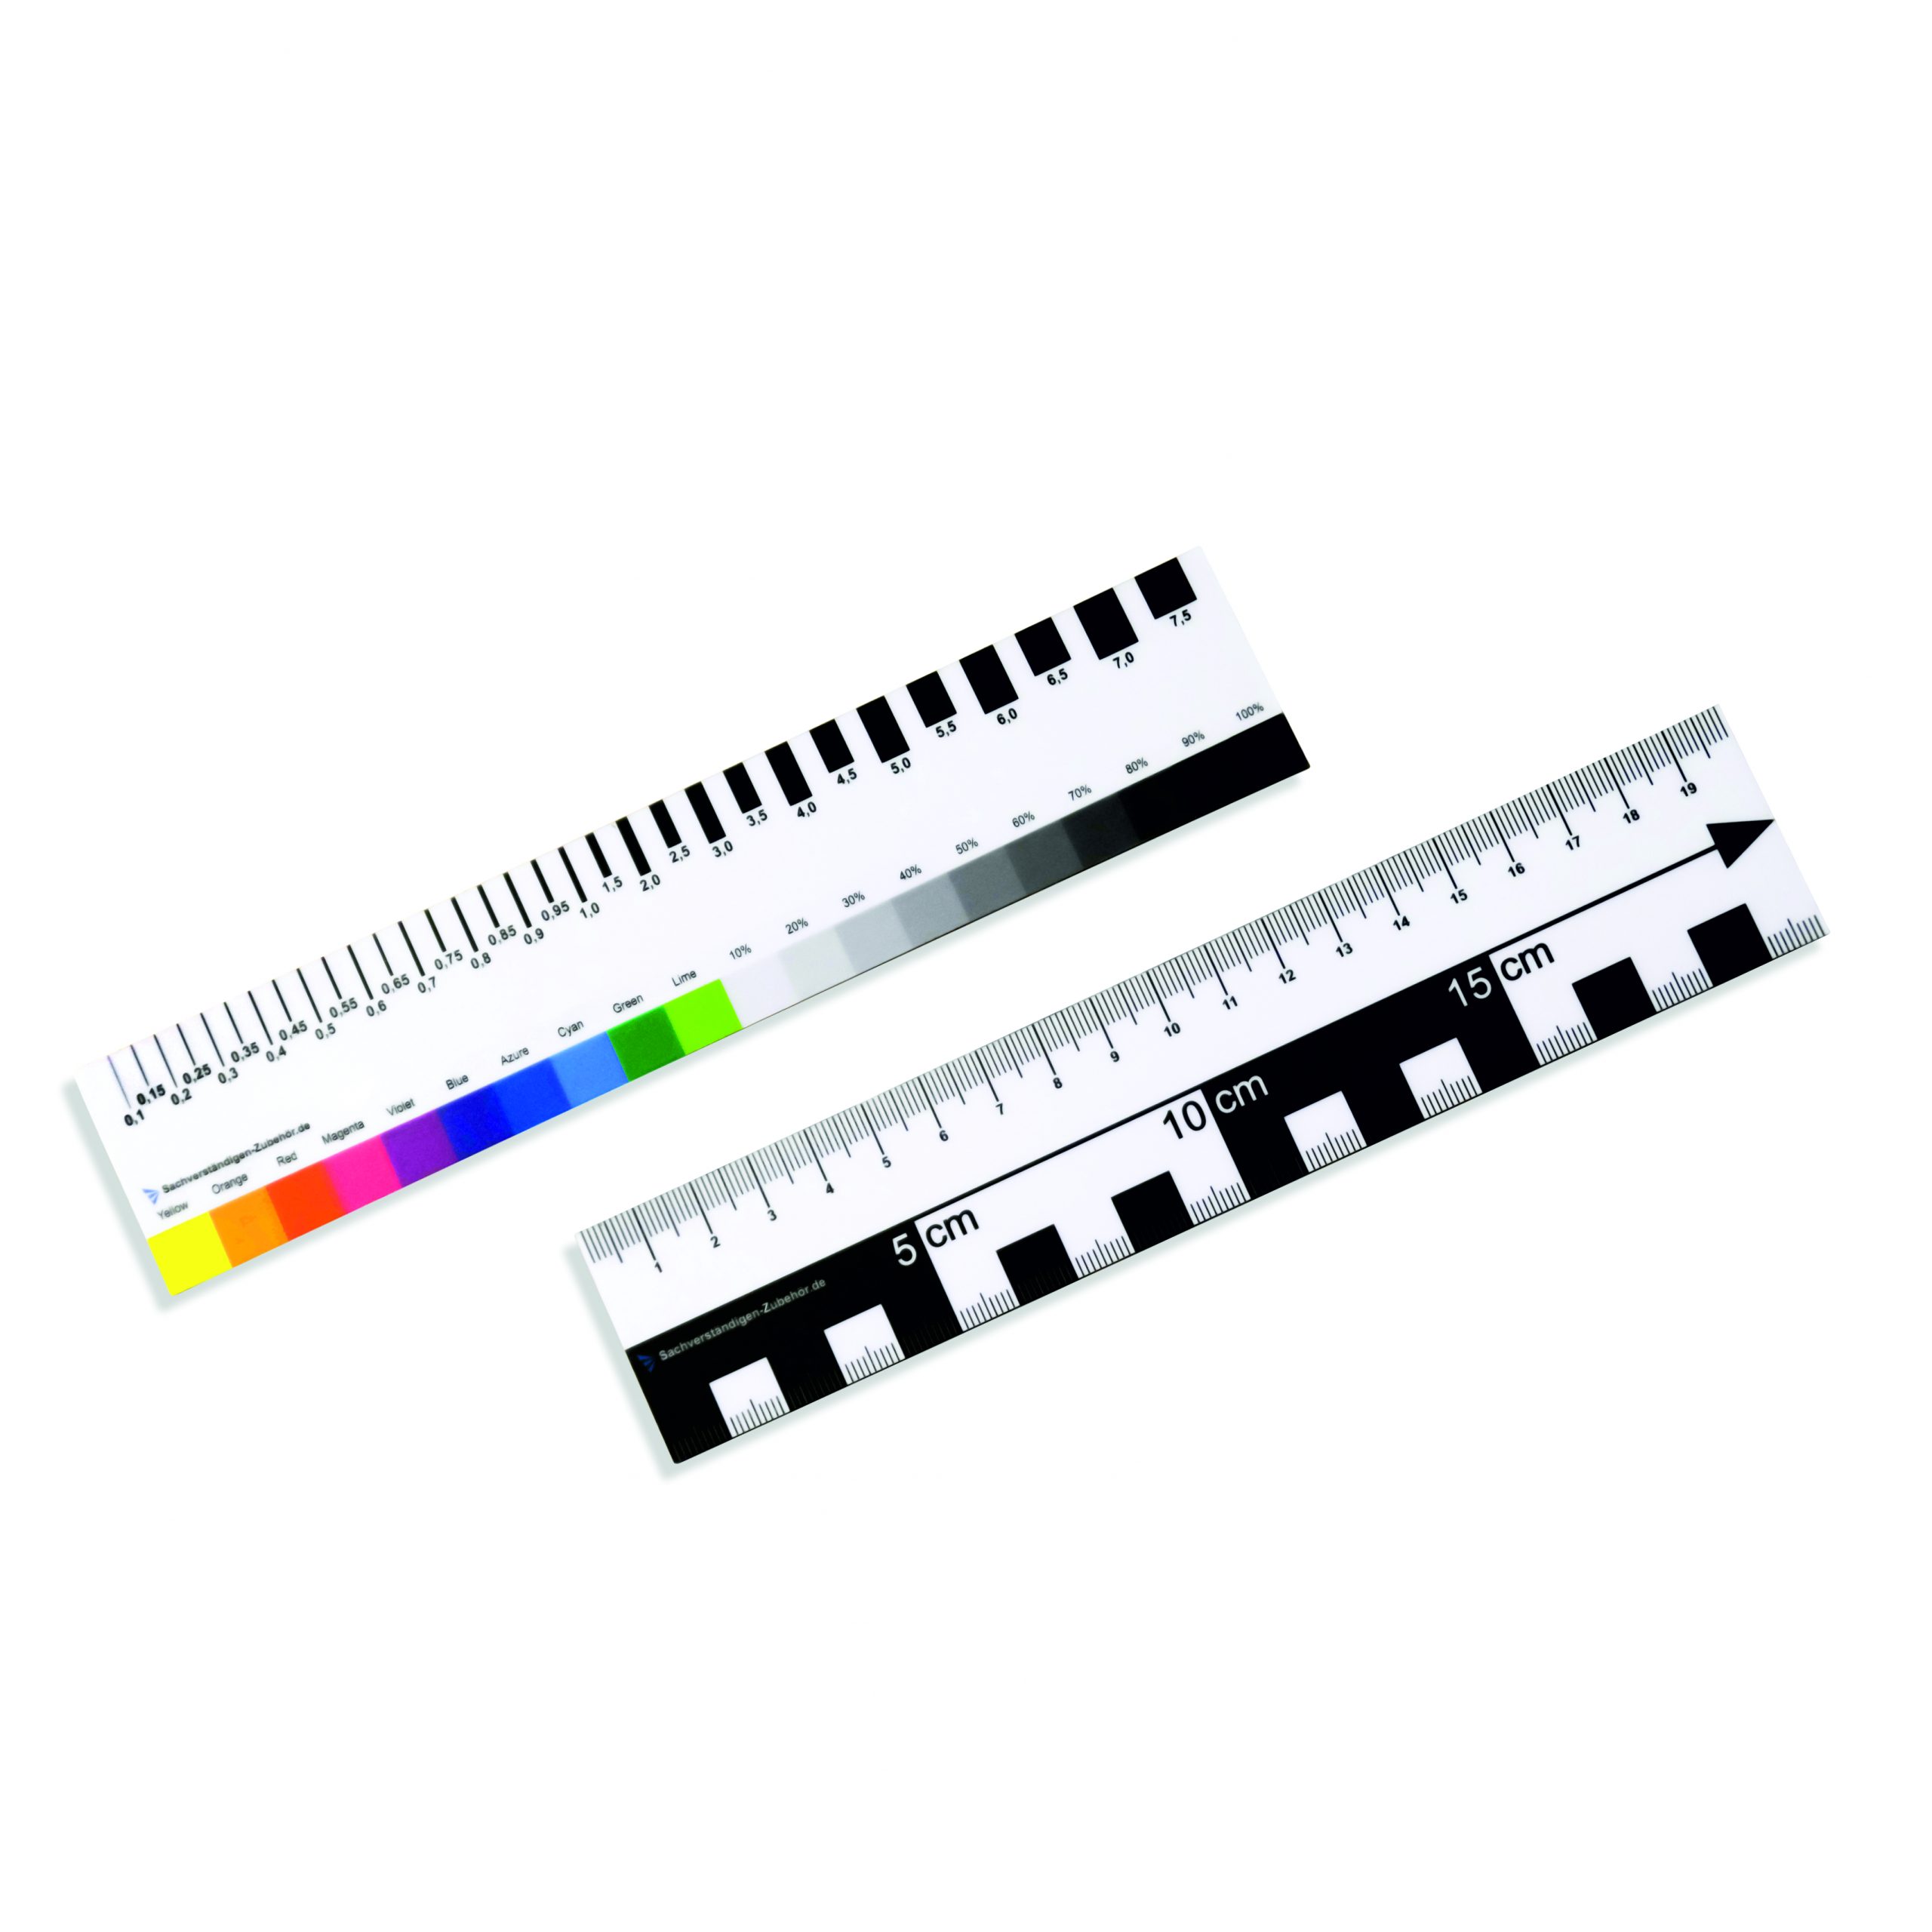 Das Farbkalibrierung - Farbmaßlineal - 20cm ist ein praktisches Werkzeug für alle, die Wert auf präzise Farbwiedergabe legen. Mit diesem handlichen Lineal können Sie die Farben in Ihren Projekten genau messen und kalibrieren. Egal ob Sie Fotograf, Grafikdesigner oder Künstler sind, das Farbmaßlineal hilft Ihnen dabei, die gewünschten Farbwerte zu erreichen und eine konsistente Farbwiedergabe sicherzustellen. Das Lineal besteht aus hochwertigem Kunststoff und ist leicht zu transportieren. Mit dem Farbkalibrierung - Farbmaßlineal - 20cm haben Sie ein unverzichtbares Werkzeug zur Hand, um Ihre Farben präzise zu kontrollieren und Ihre Projekte zum Strahlen zu bringen.